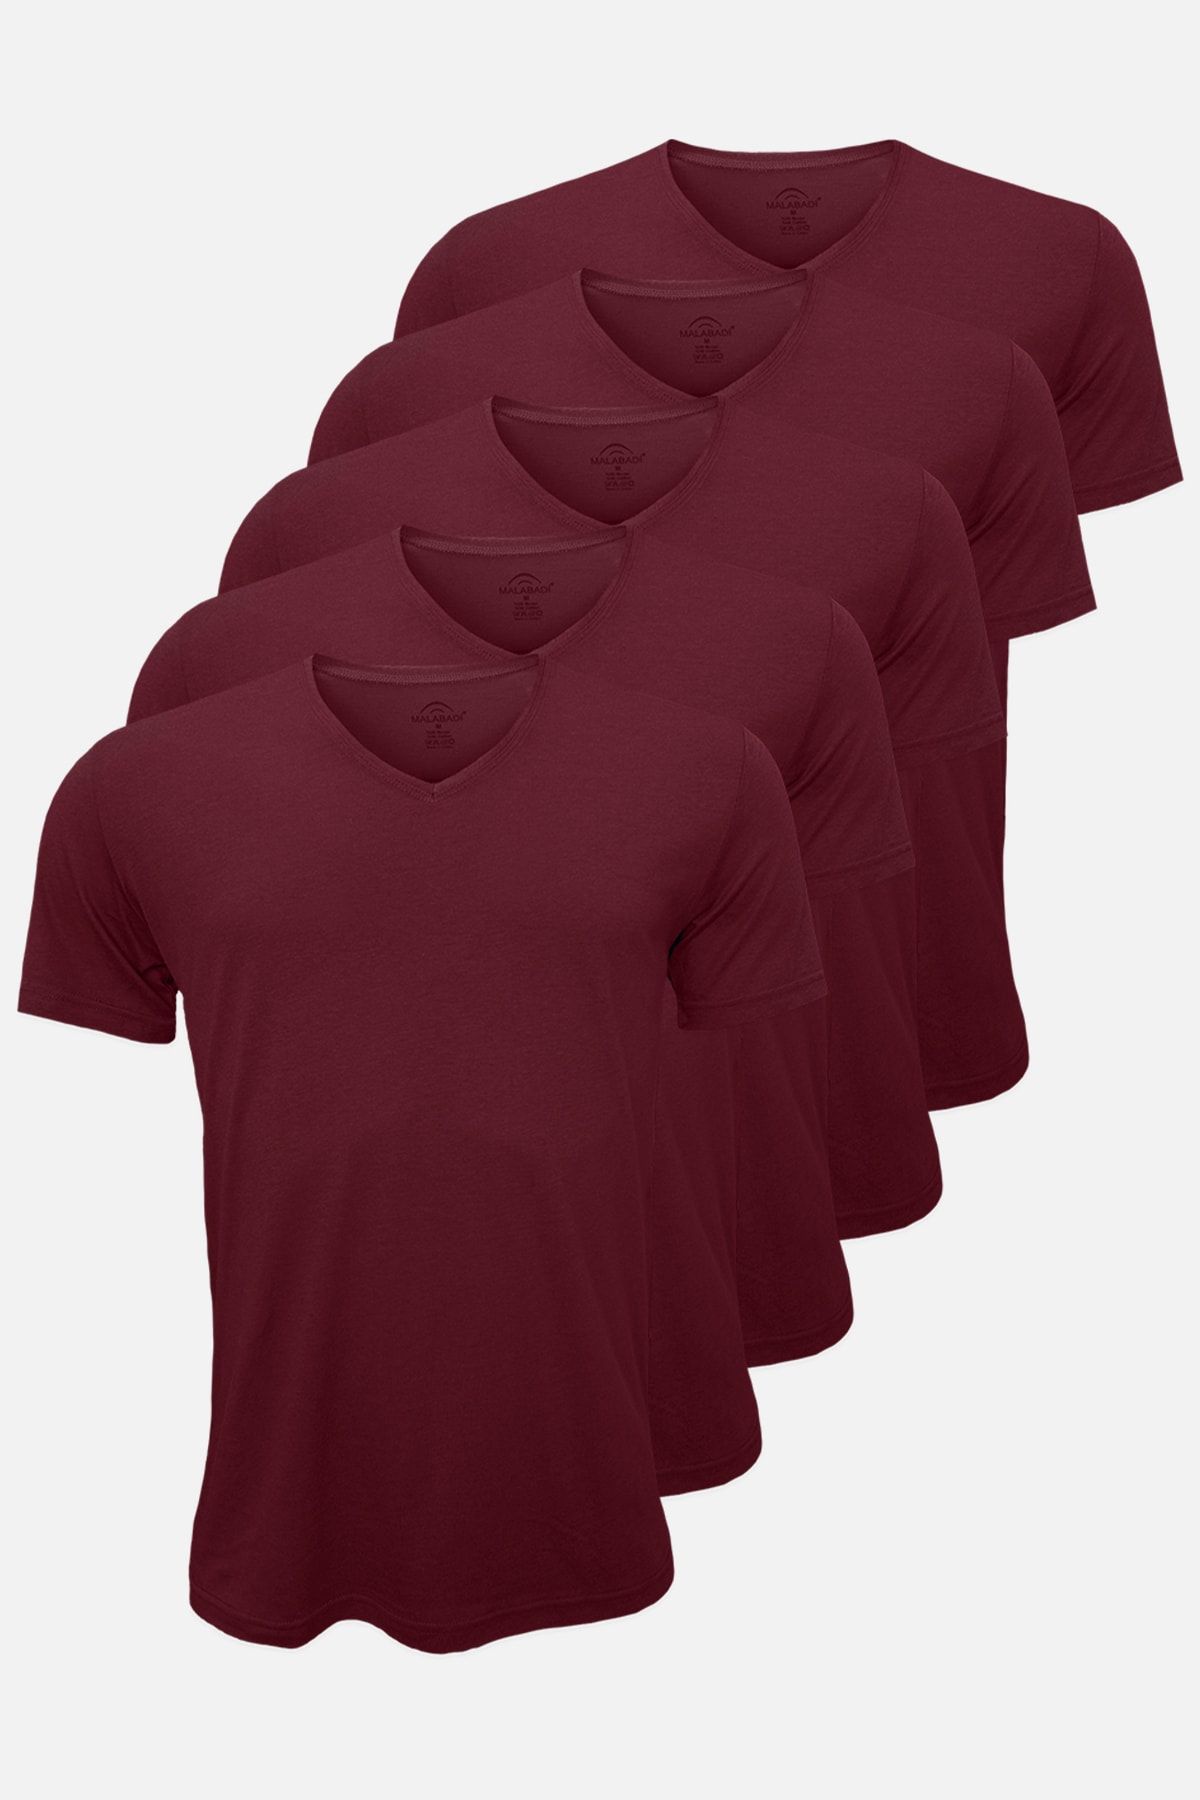 Malabadi Yaz Serinliği Erkek Bordo Basic V Yaka Ince Modal Kumaş 5 Li Tişört Paketi 5m085